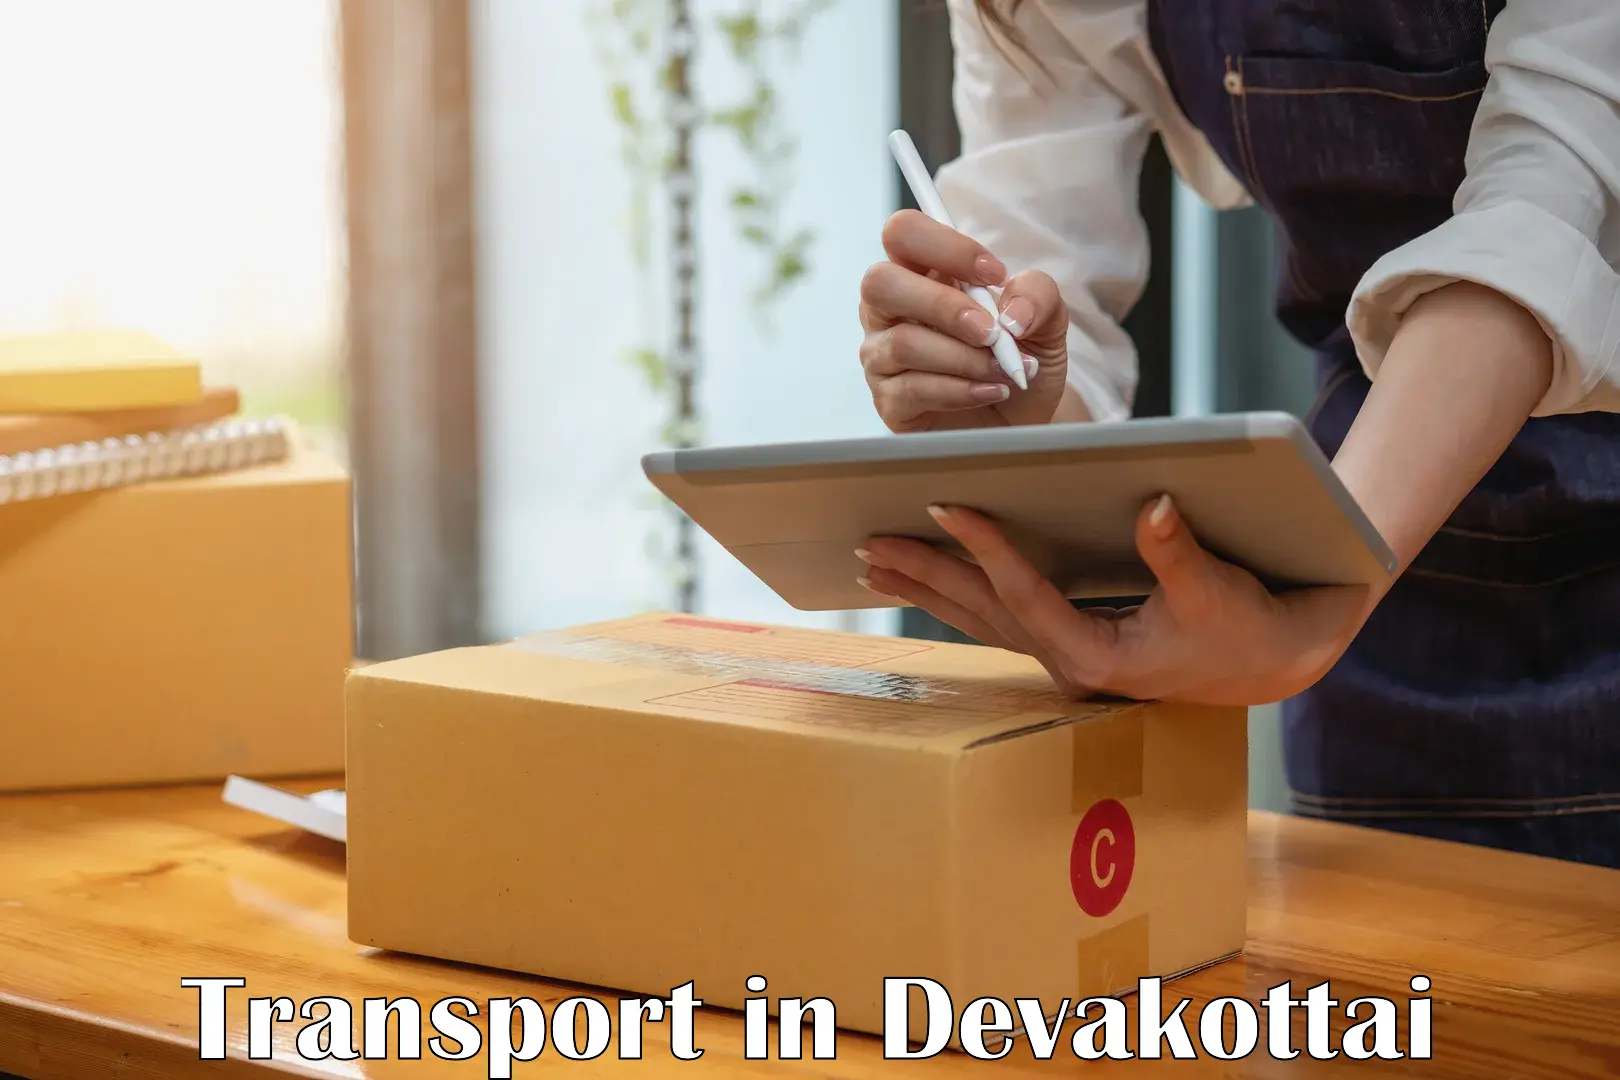 Container transportation services in Devakottai